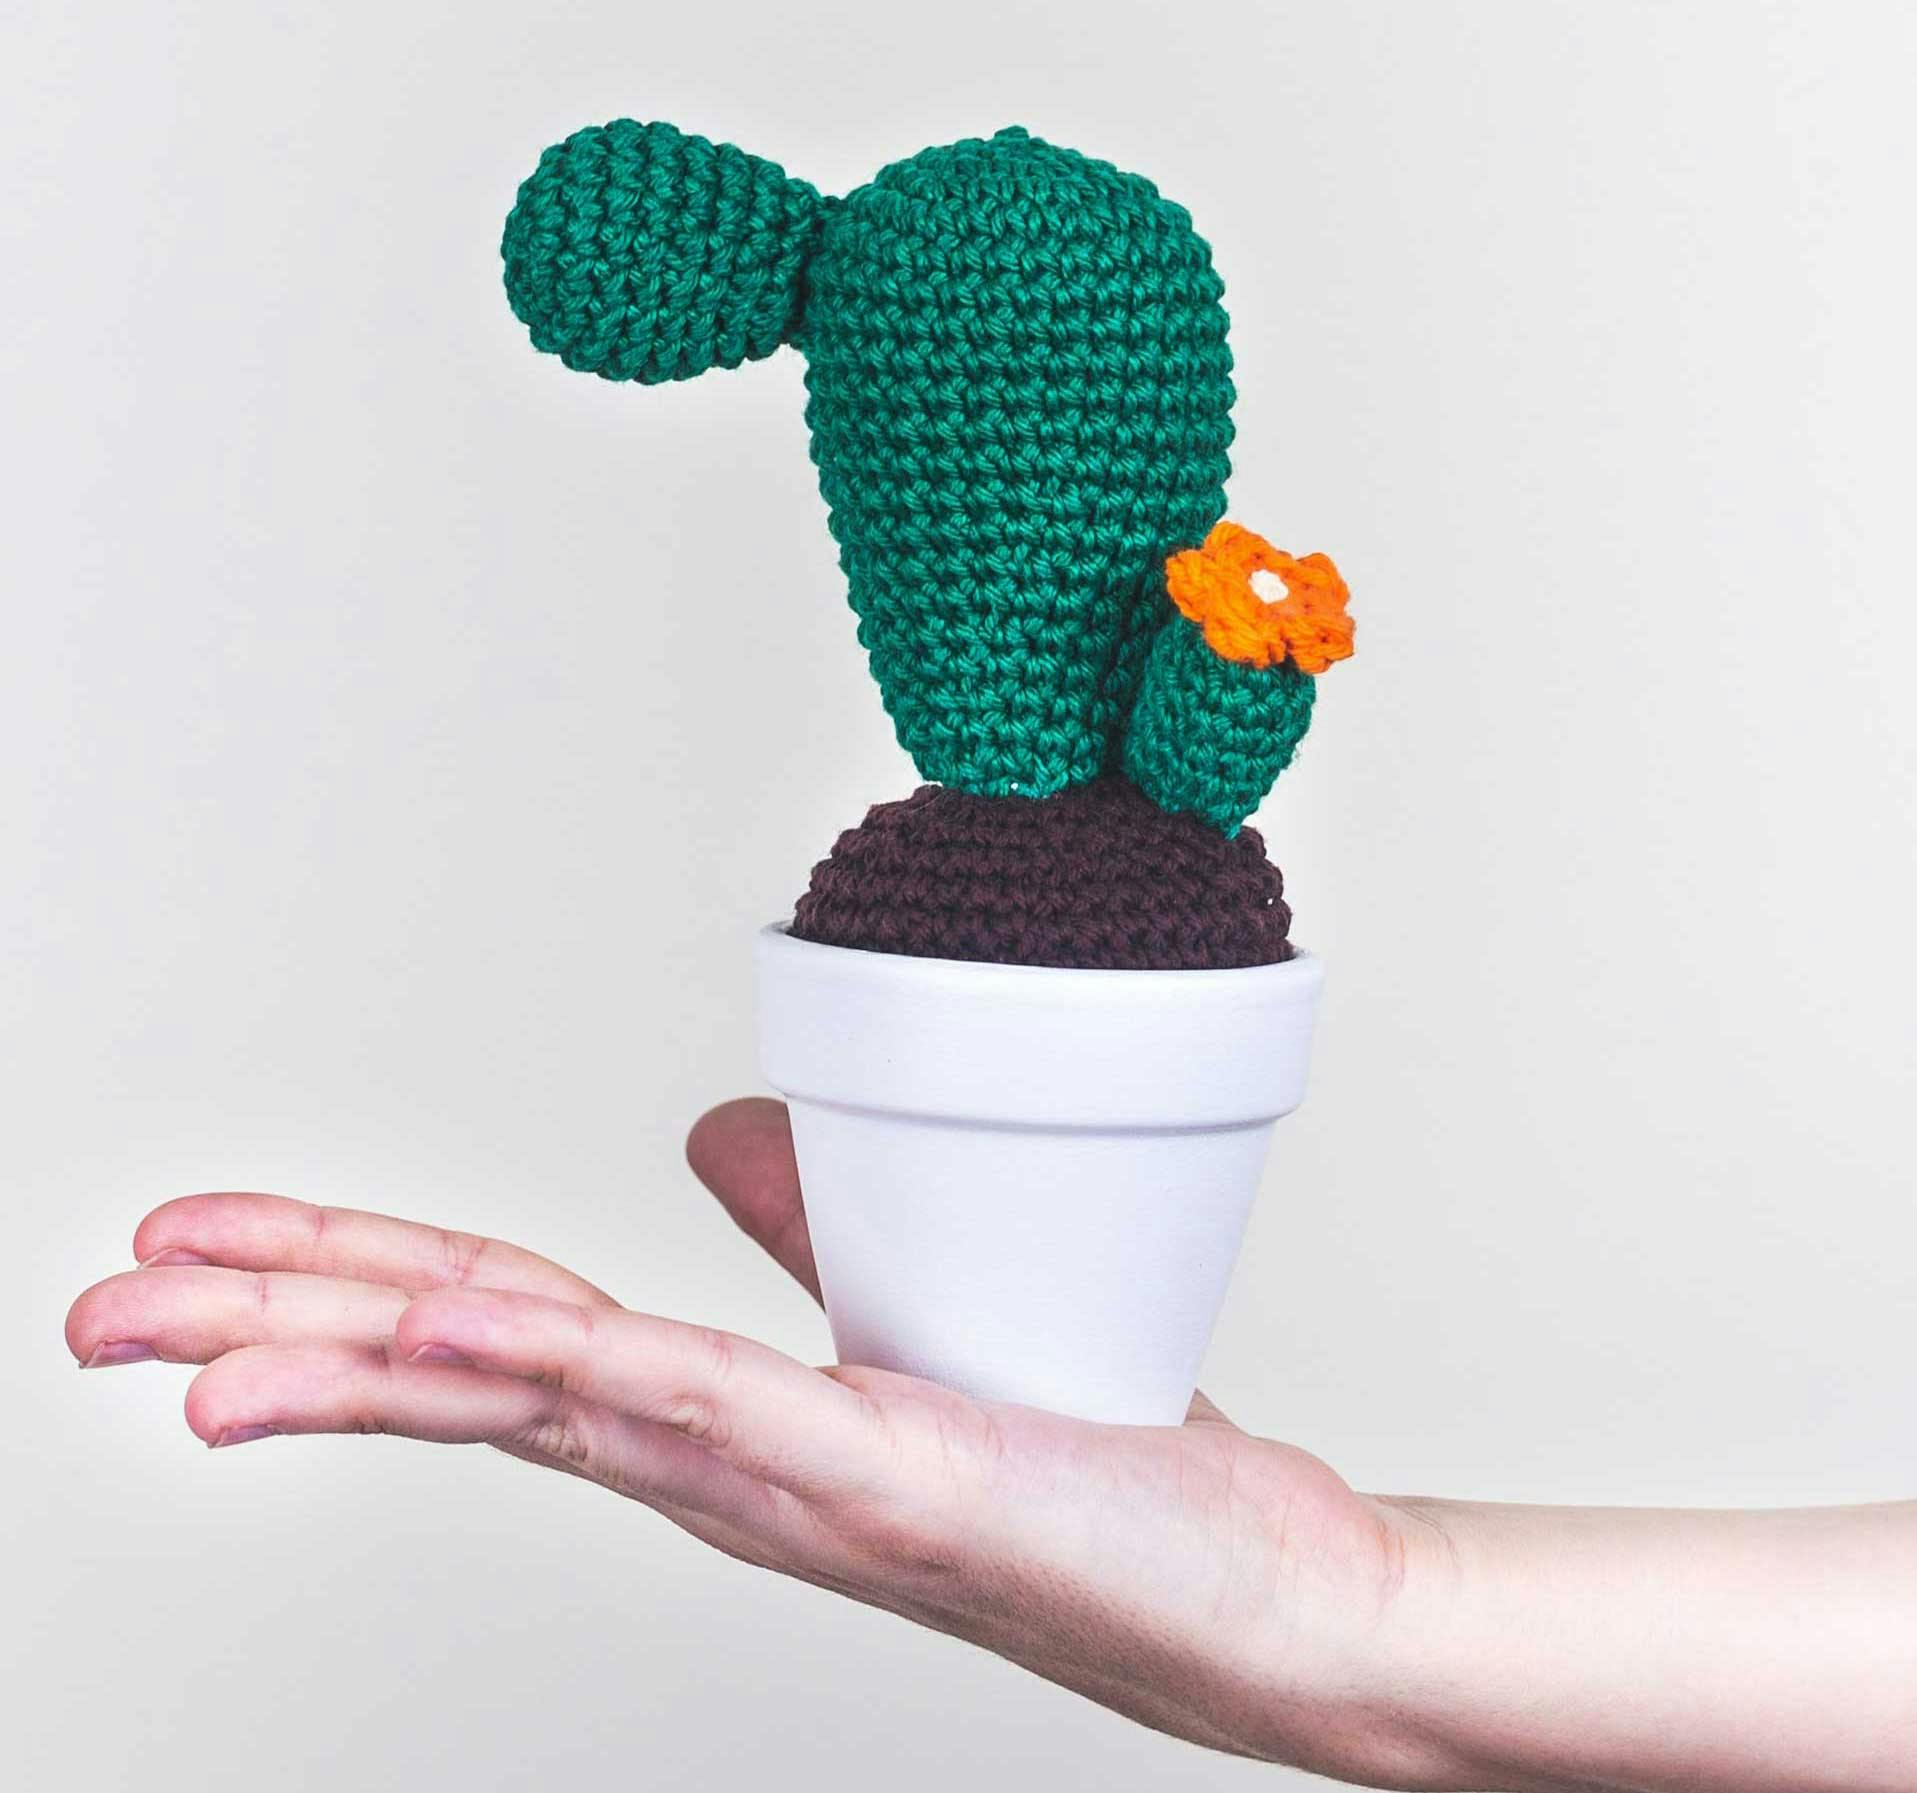  Cactus vert dans un pot réalisé au crochet.